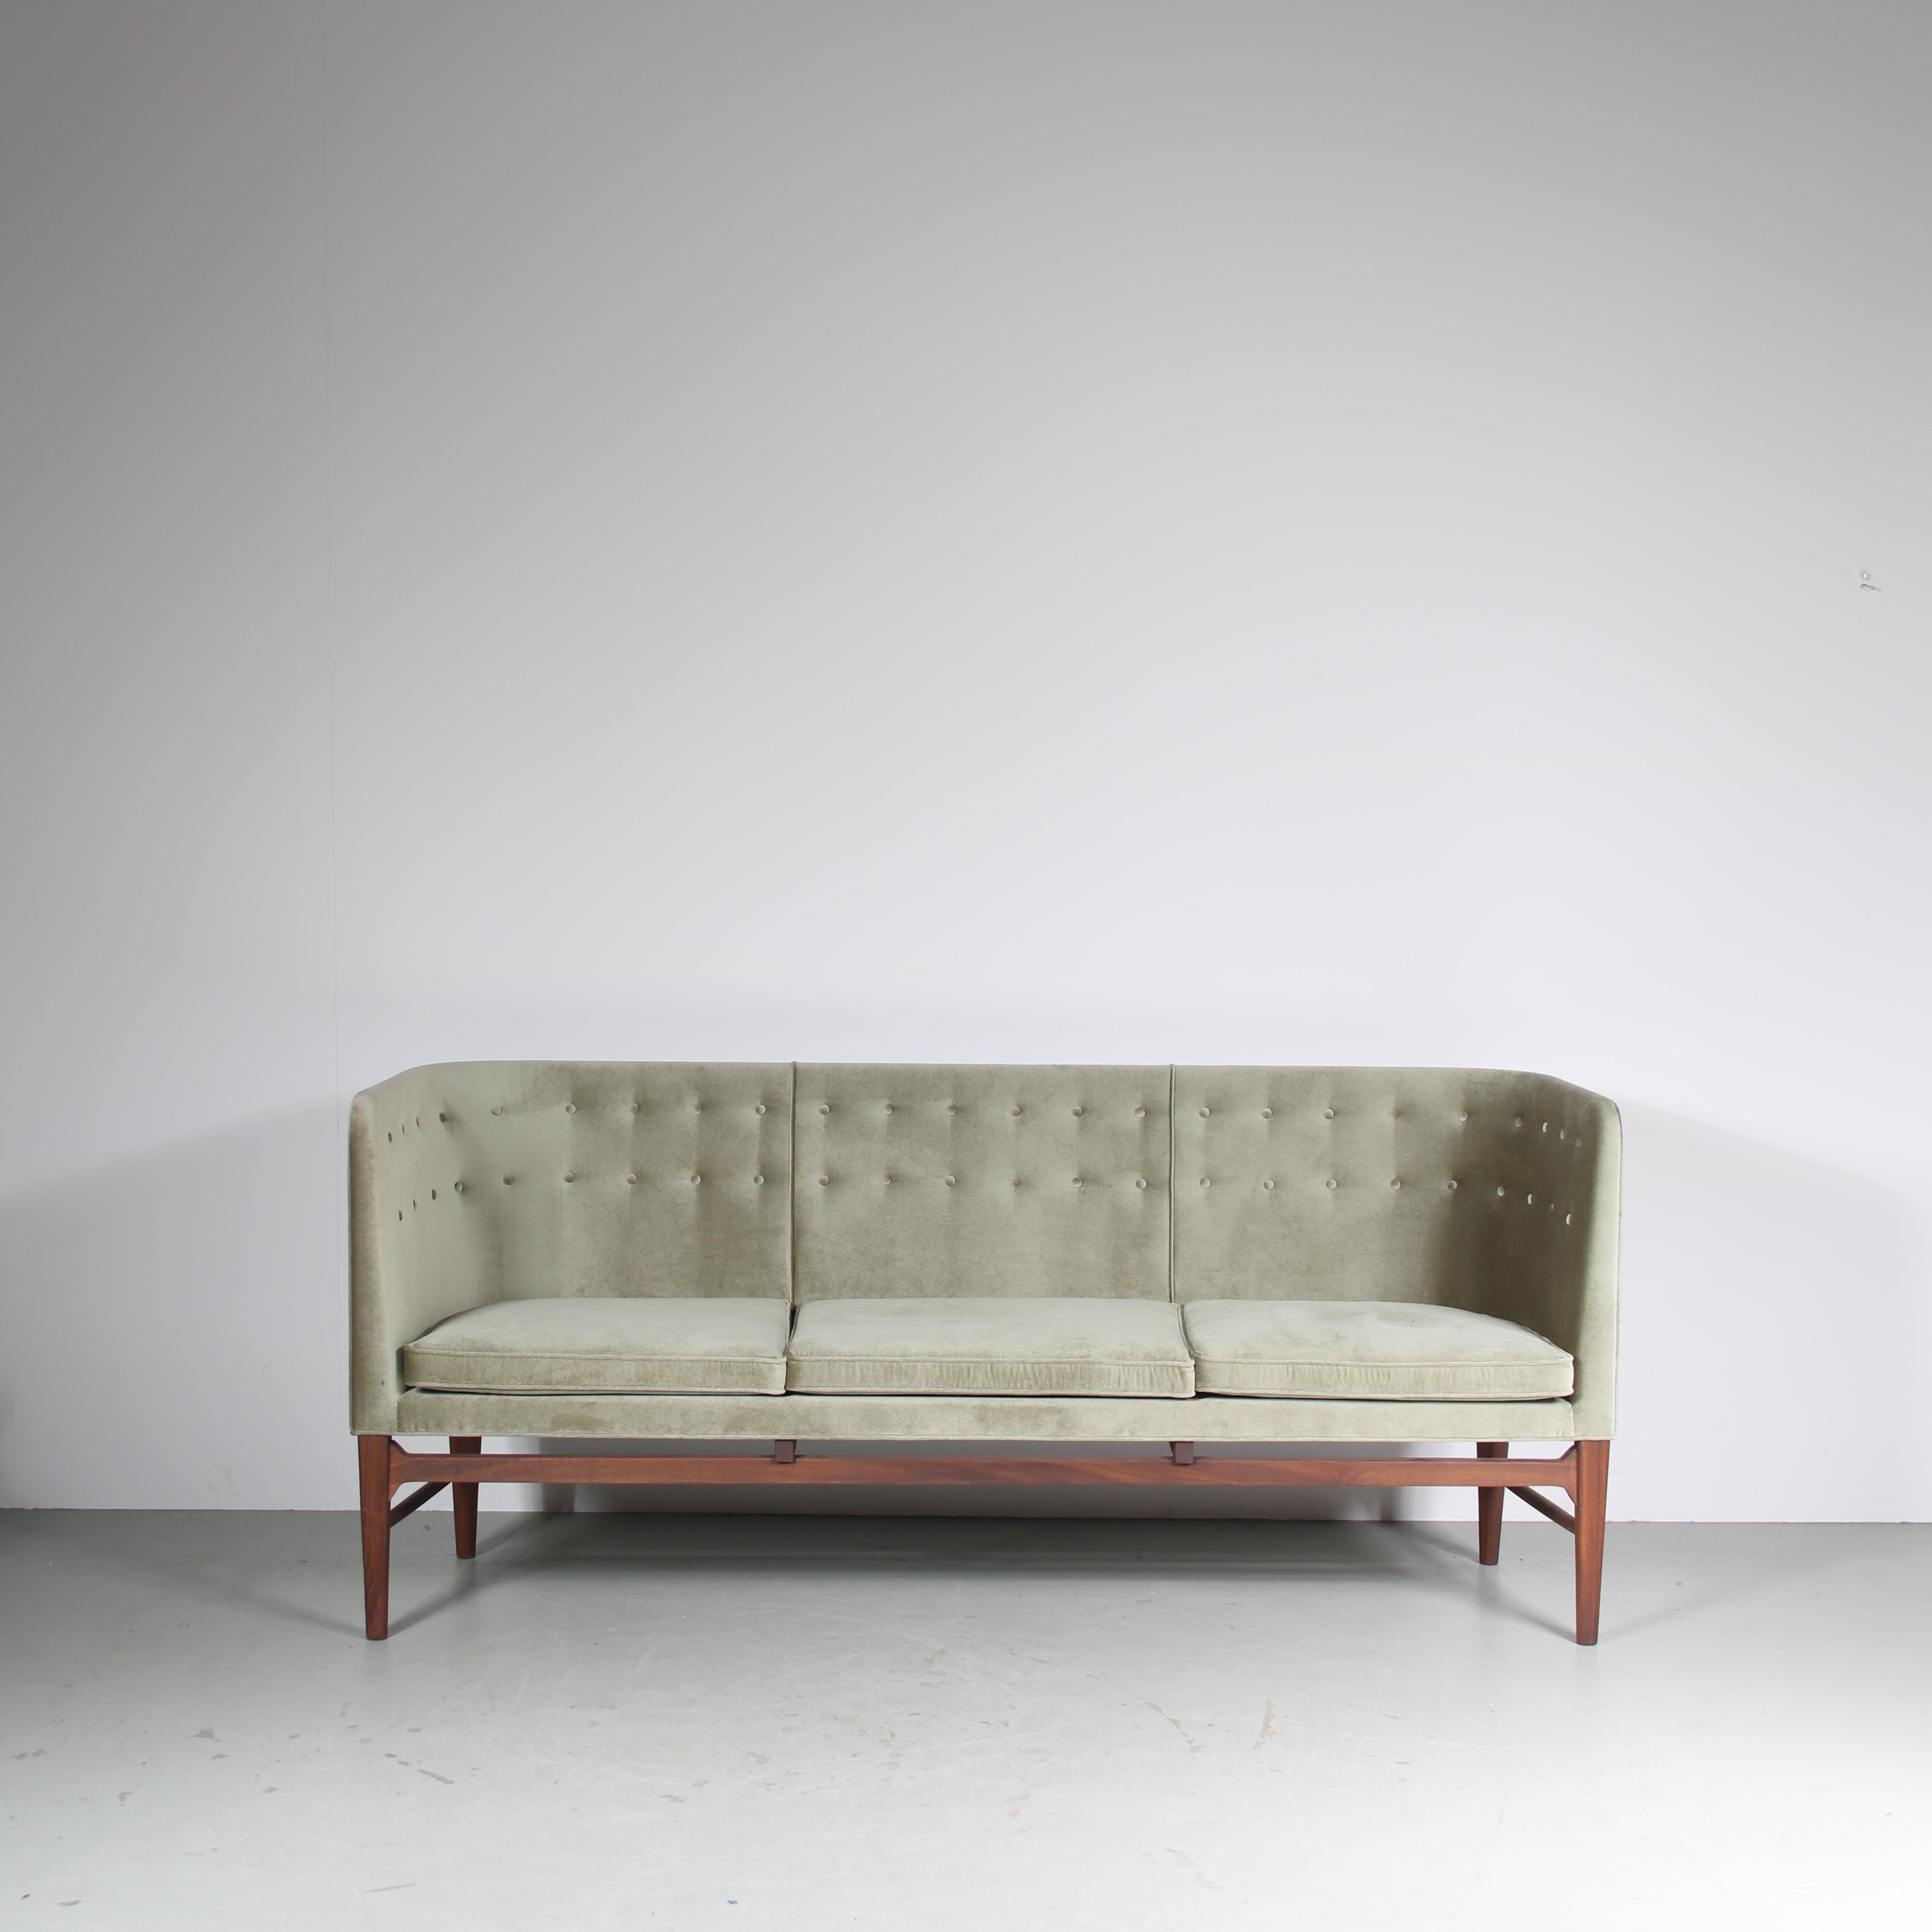 Un beau canapé, modèle Mayor AJ5, conçu par Arne Jacobsen et Flemming Lassen en 1939 et fabriqué par &Tradition au Danemark dans les années 2020.

Fabriqué en bois de chêne de haute qualité avec un magnifique revêtement en tissu vert doux au